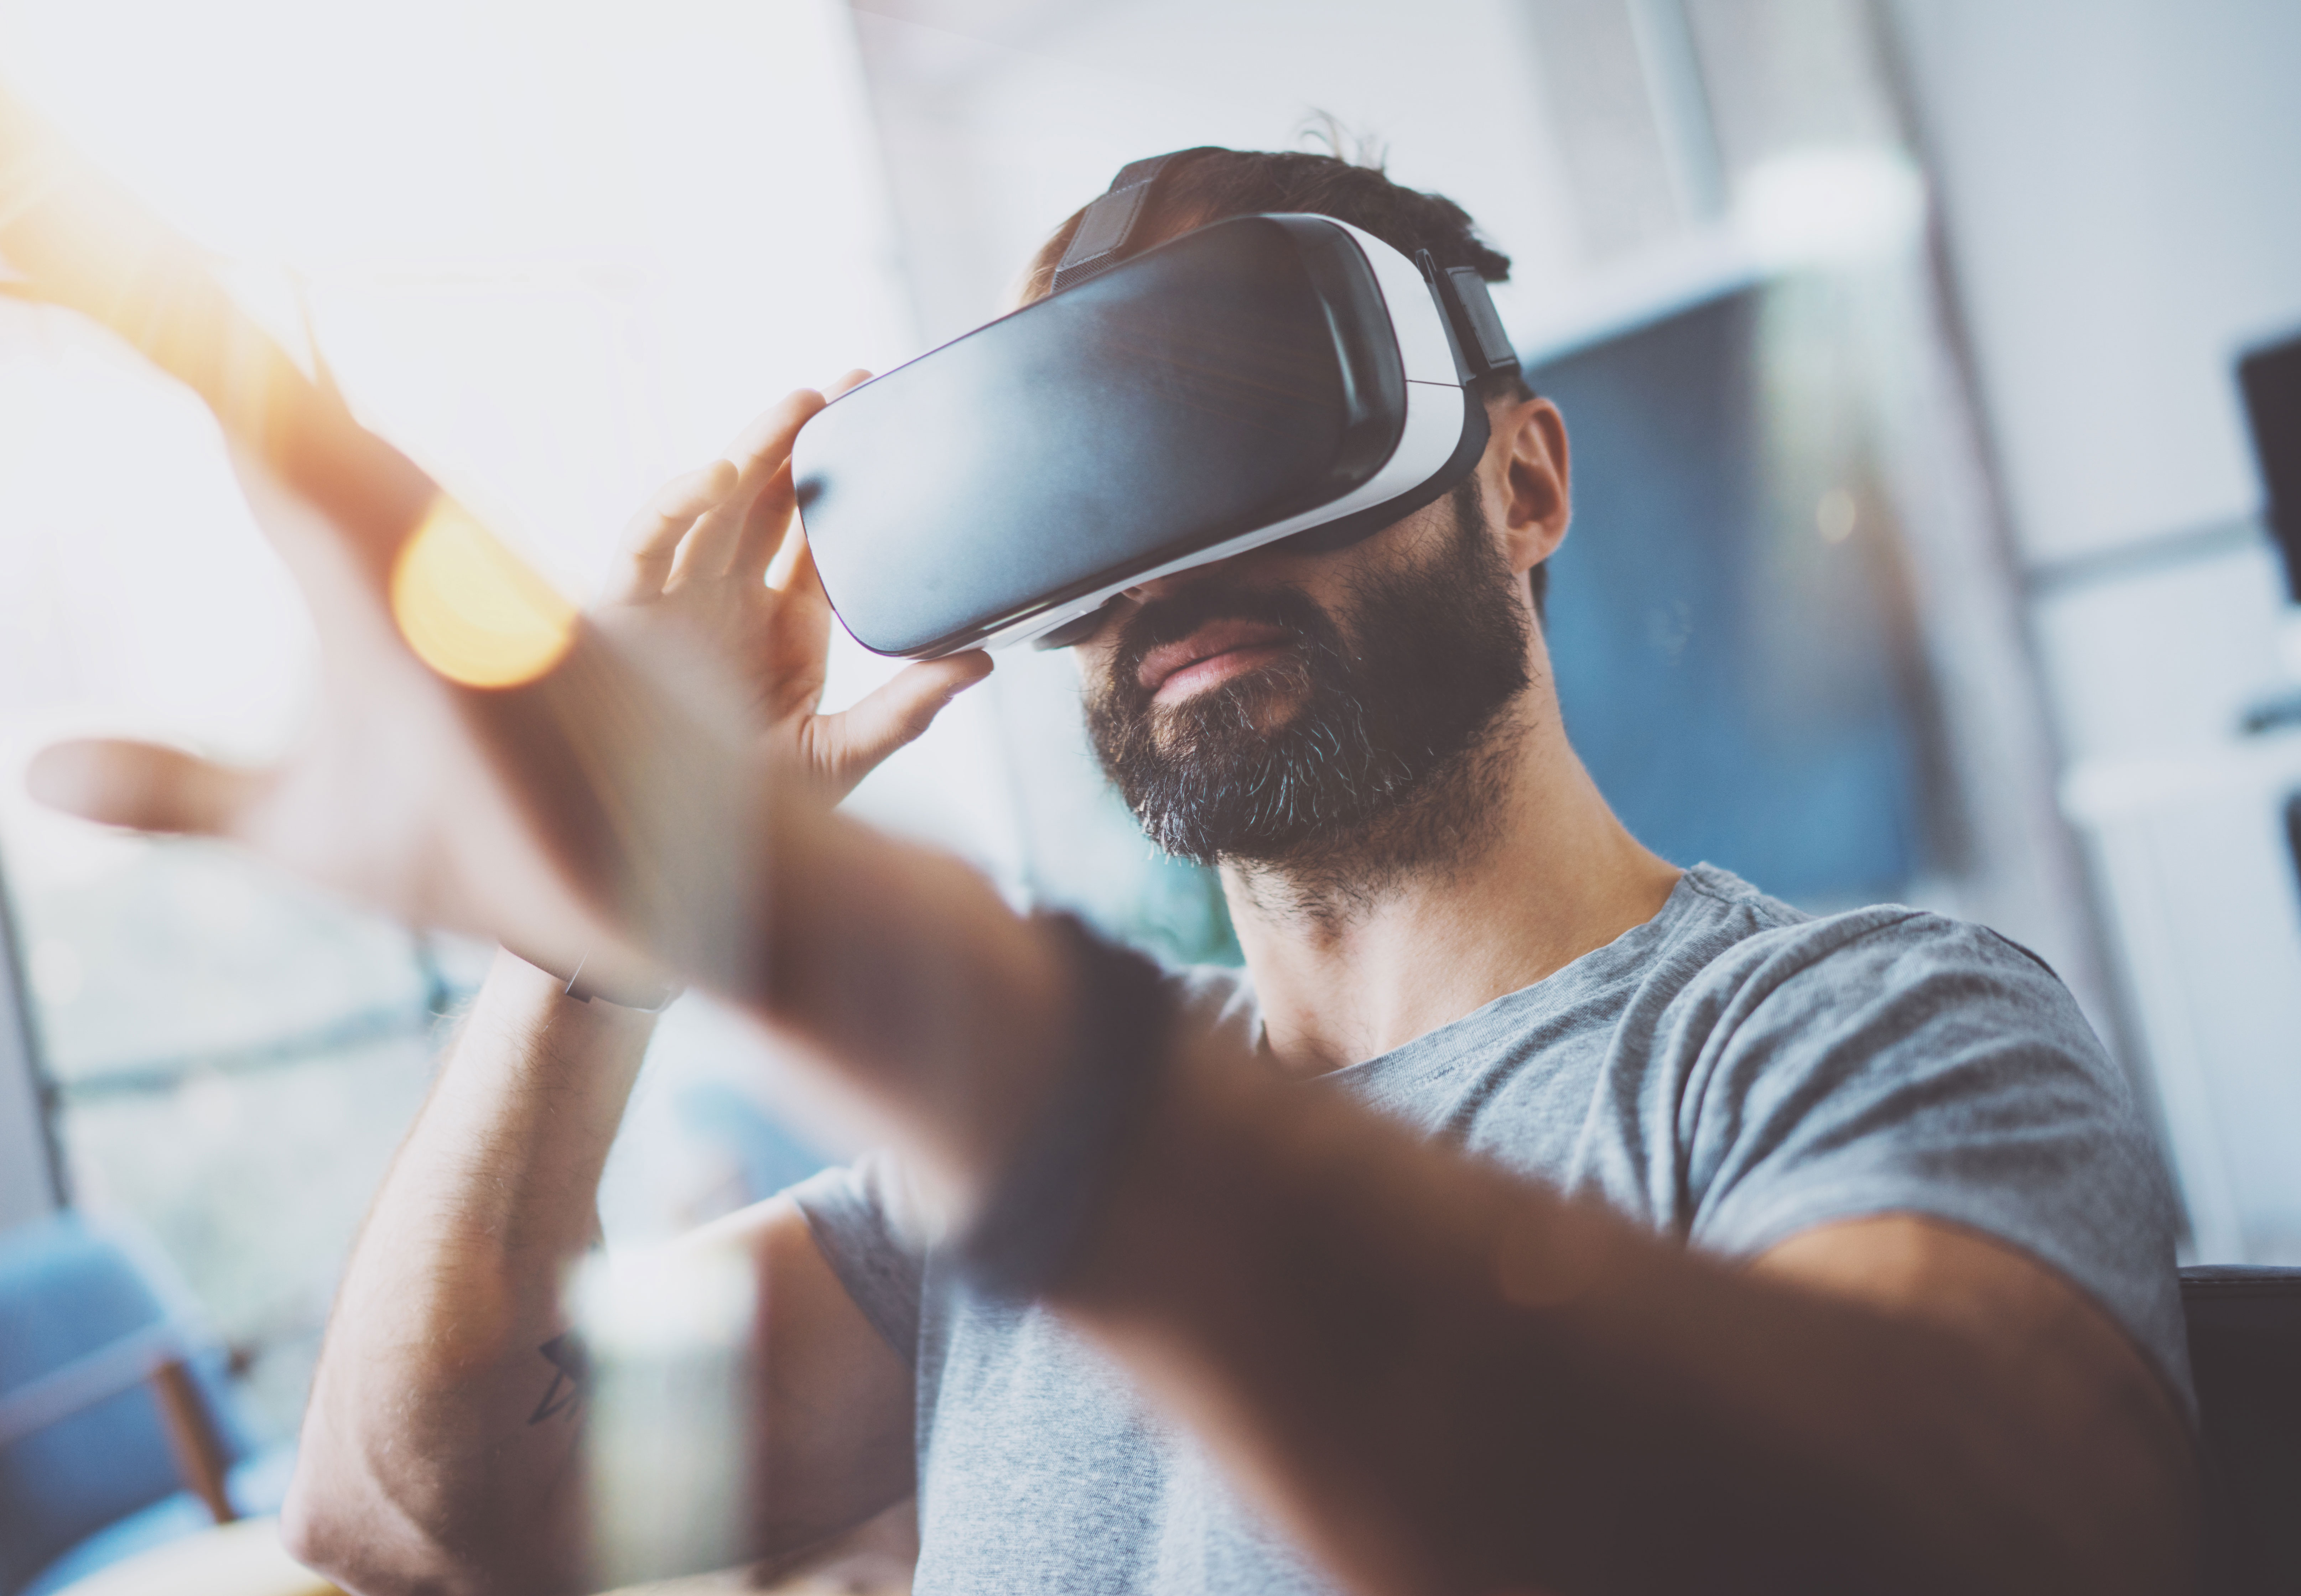 Картинка очки реальности. Виртуальная реальность виар. VR очки на человеке. Человек в виртуальной реальности. ВР очки на человеке.